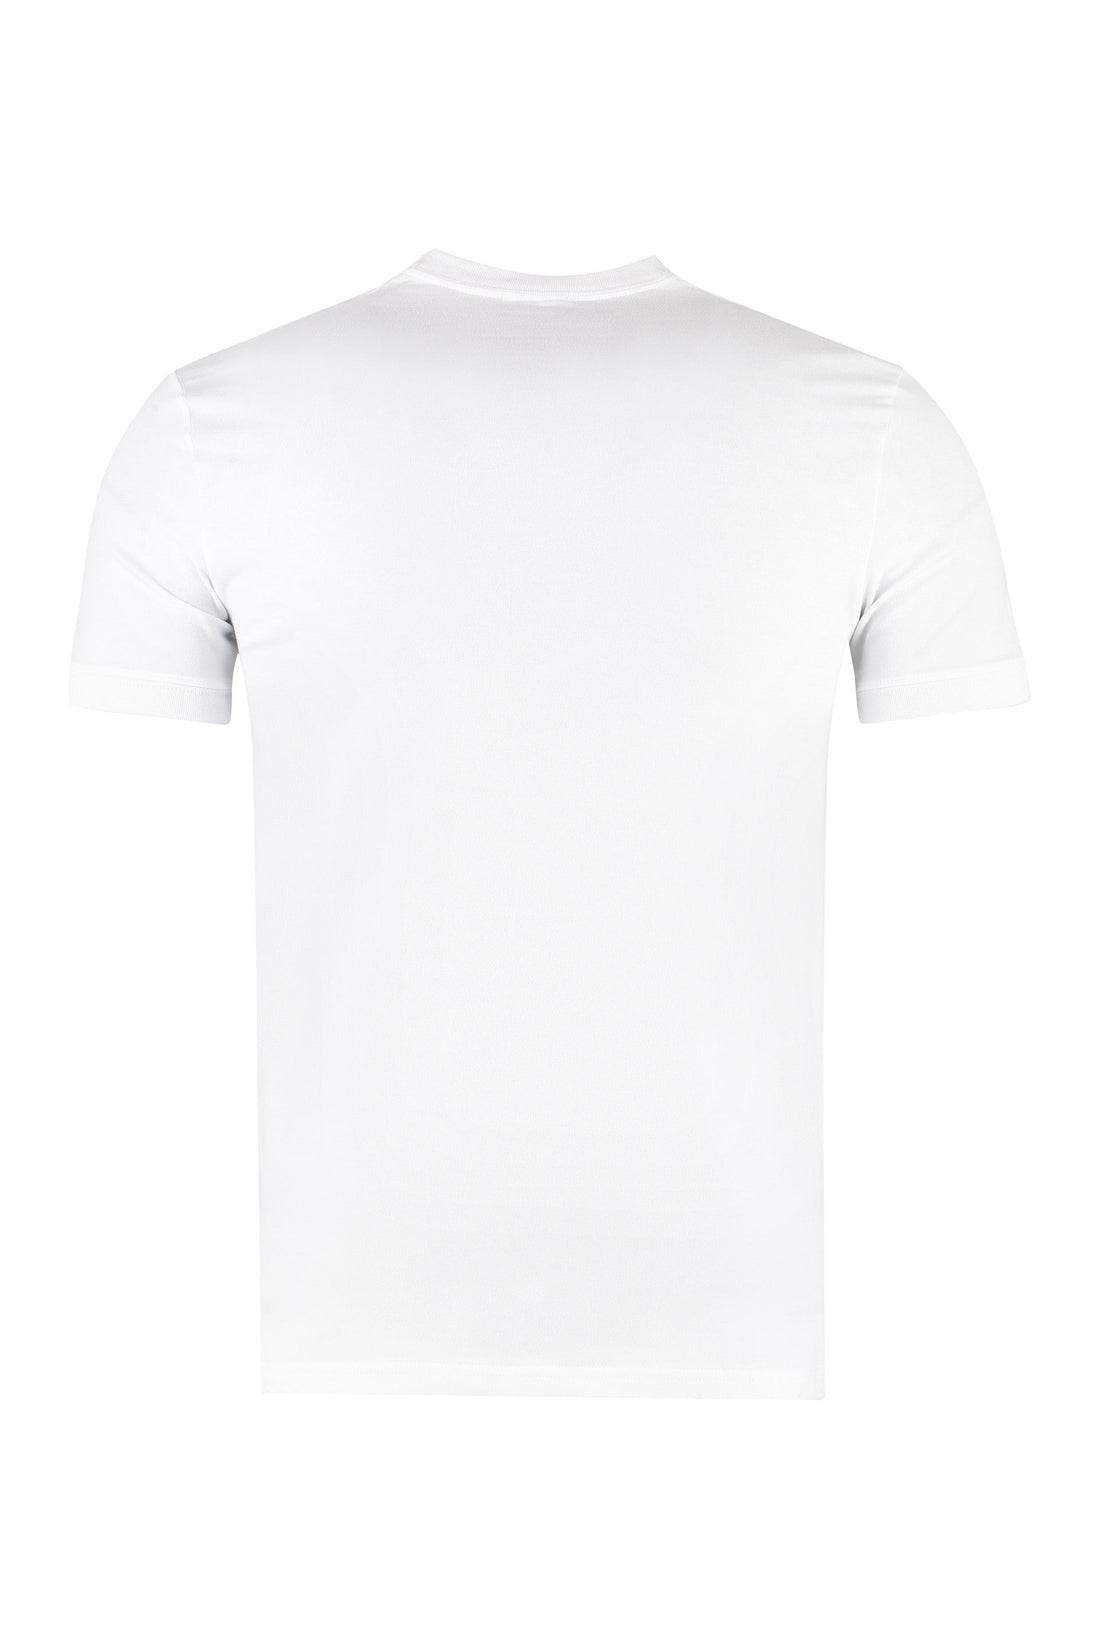 Dolce & Gabbana-OUTLET-SALE-Stretch cotton T-shirt-ARCHIVIST